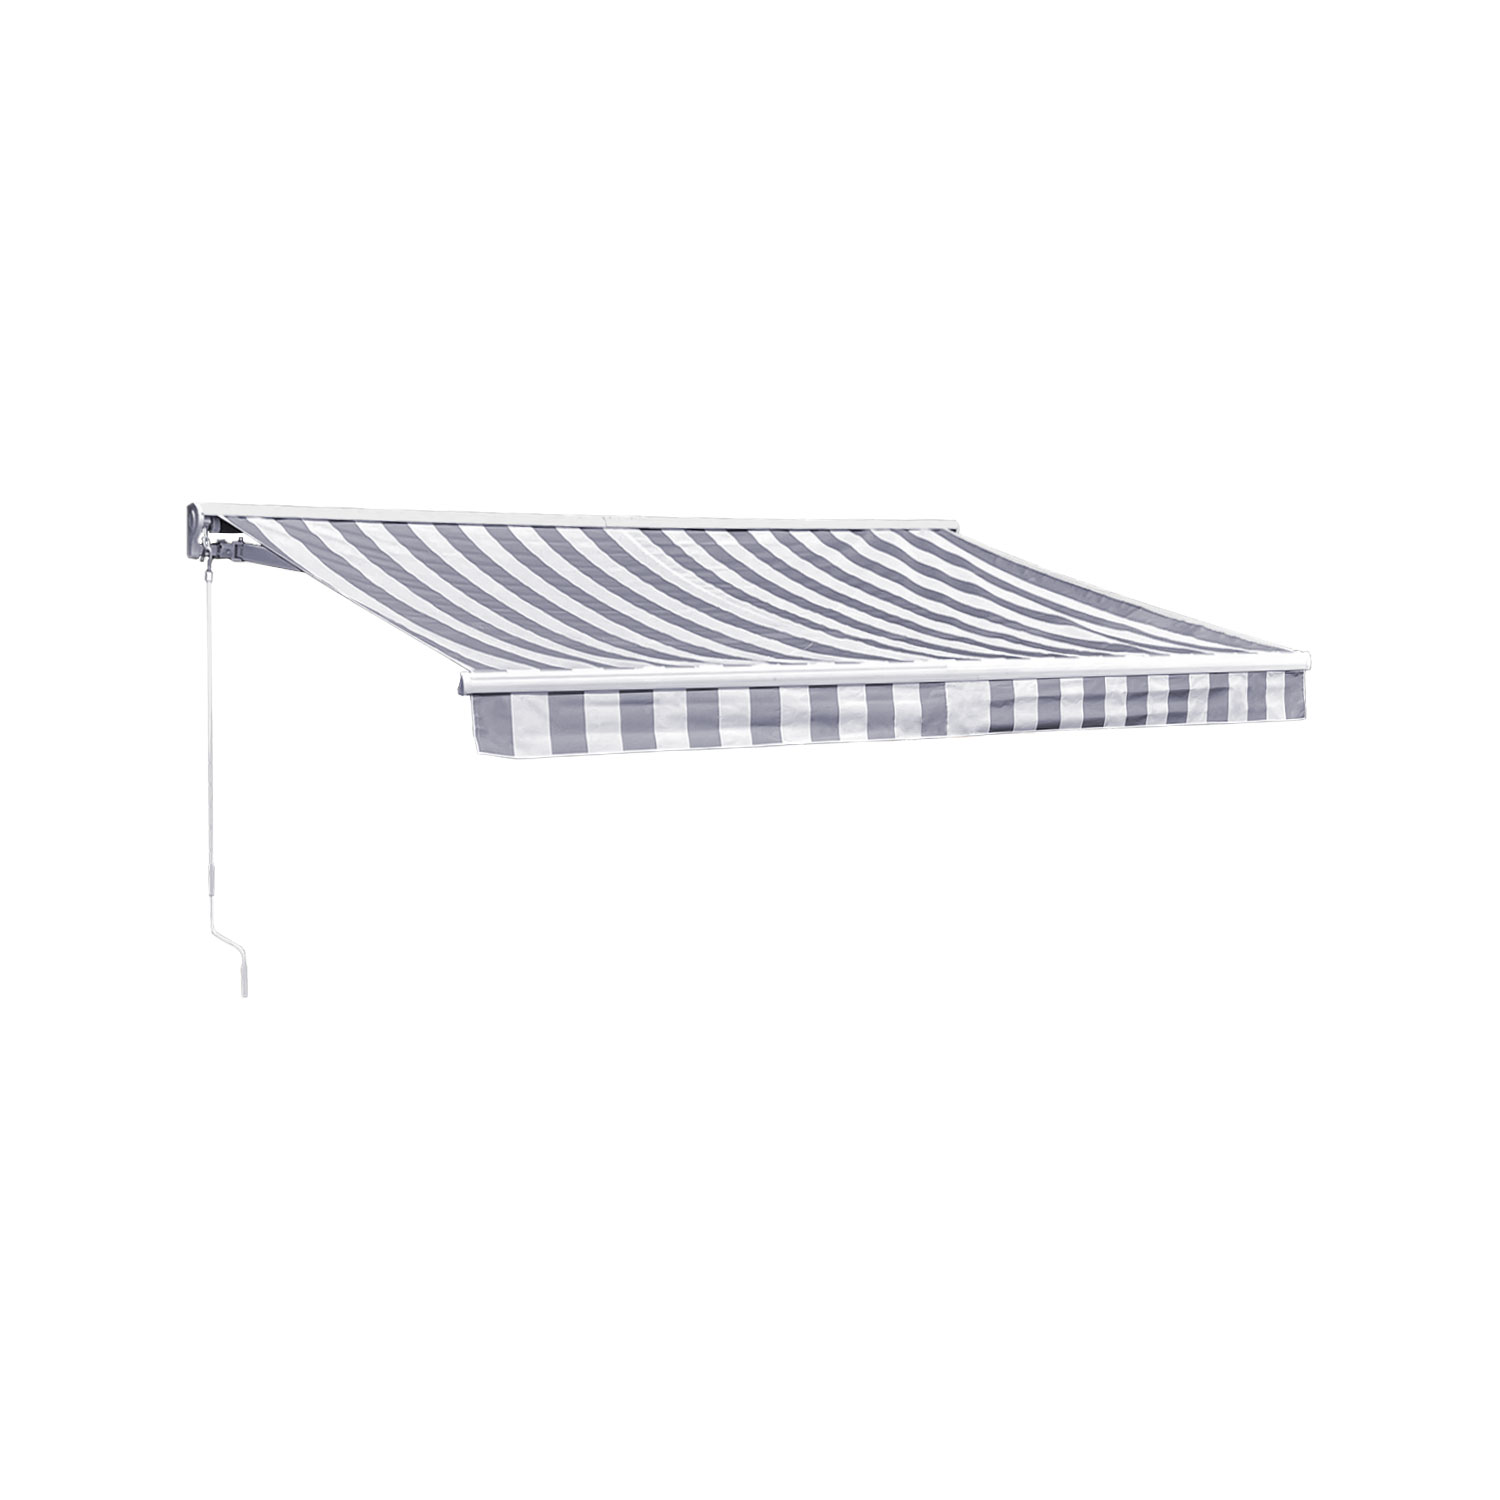 Tenda SAULE 2,95 × 2,5 m con semicupio - Tessuto a righe bianco/grigio e struttura bianca